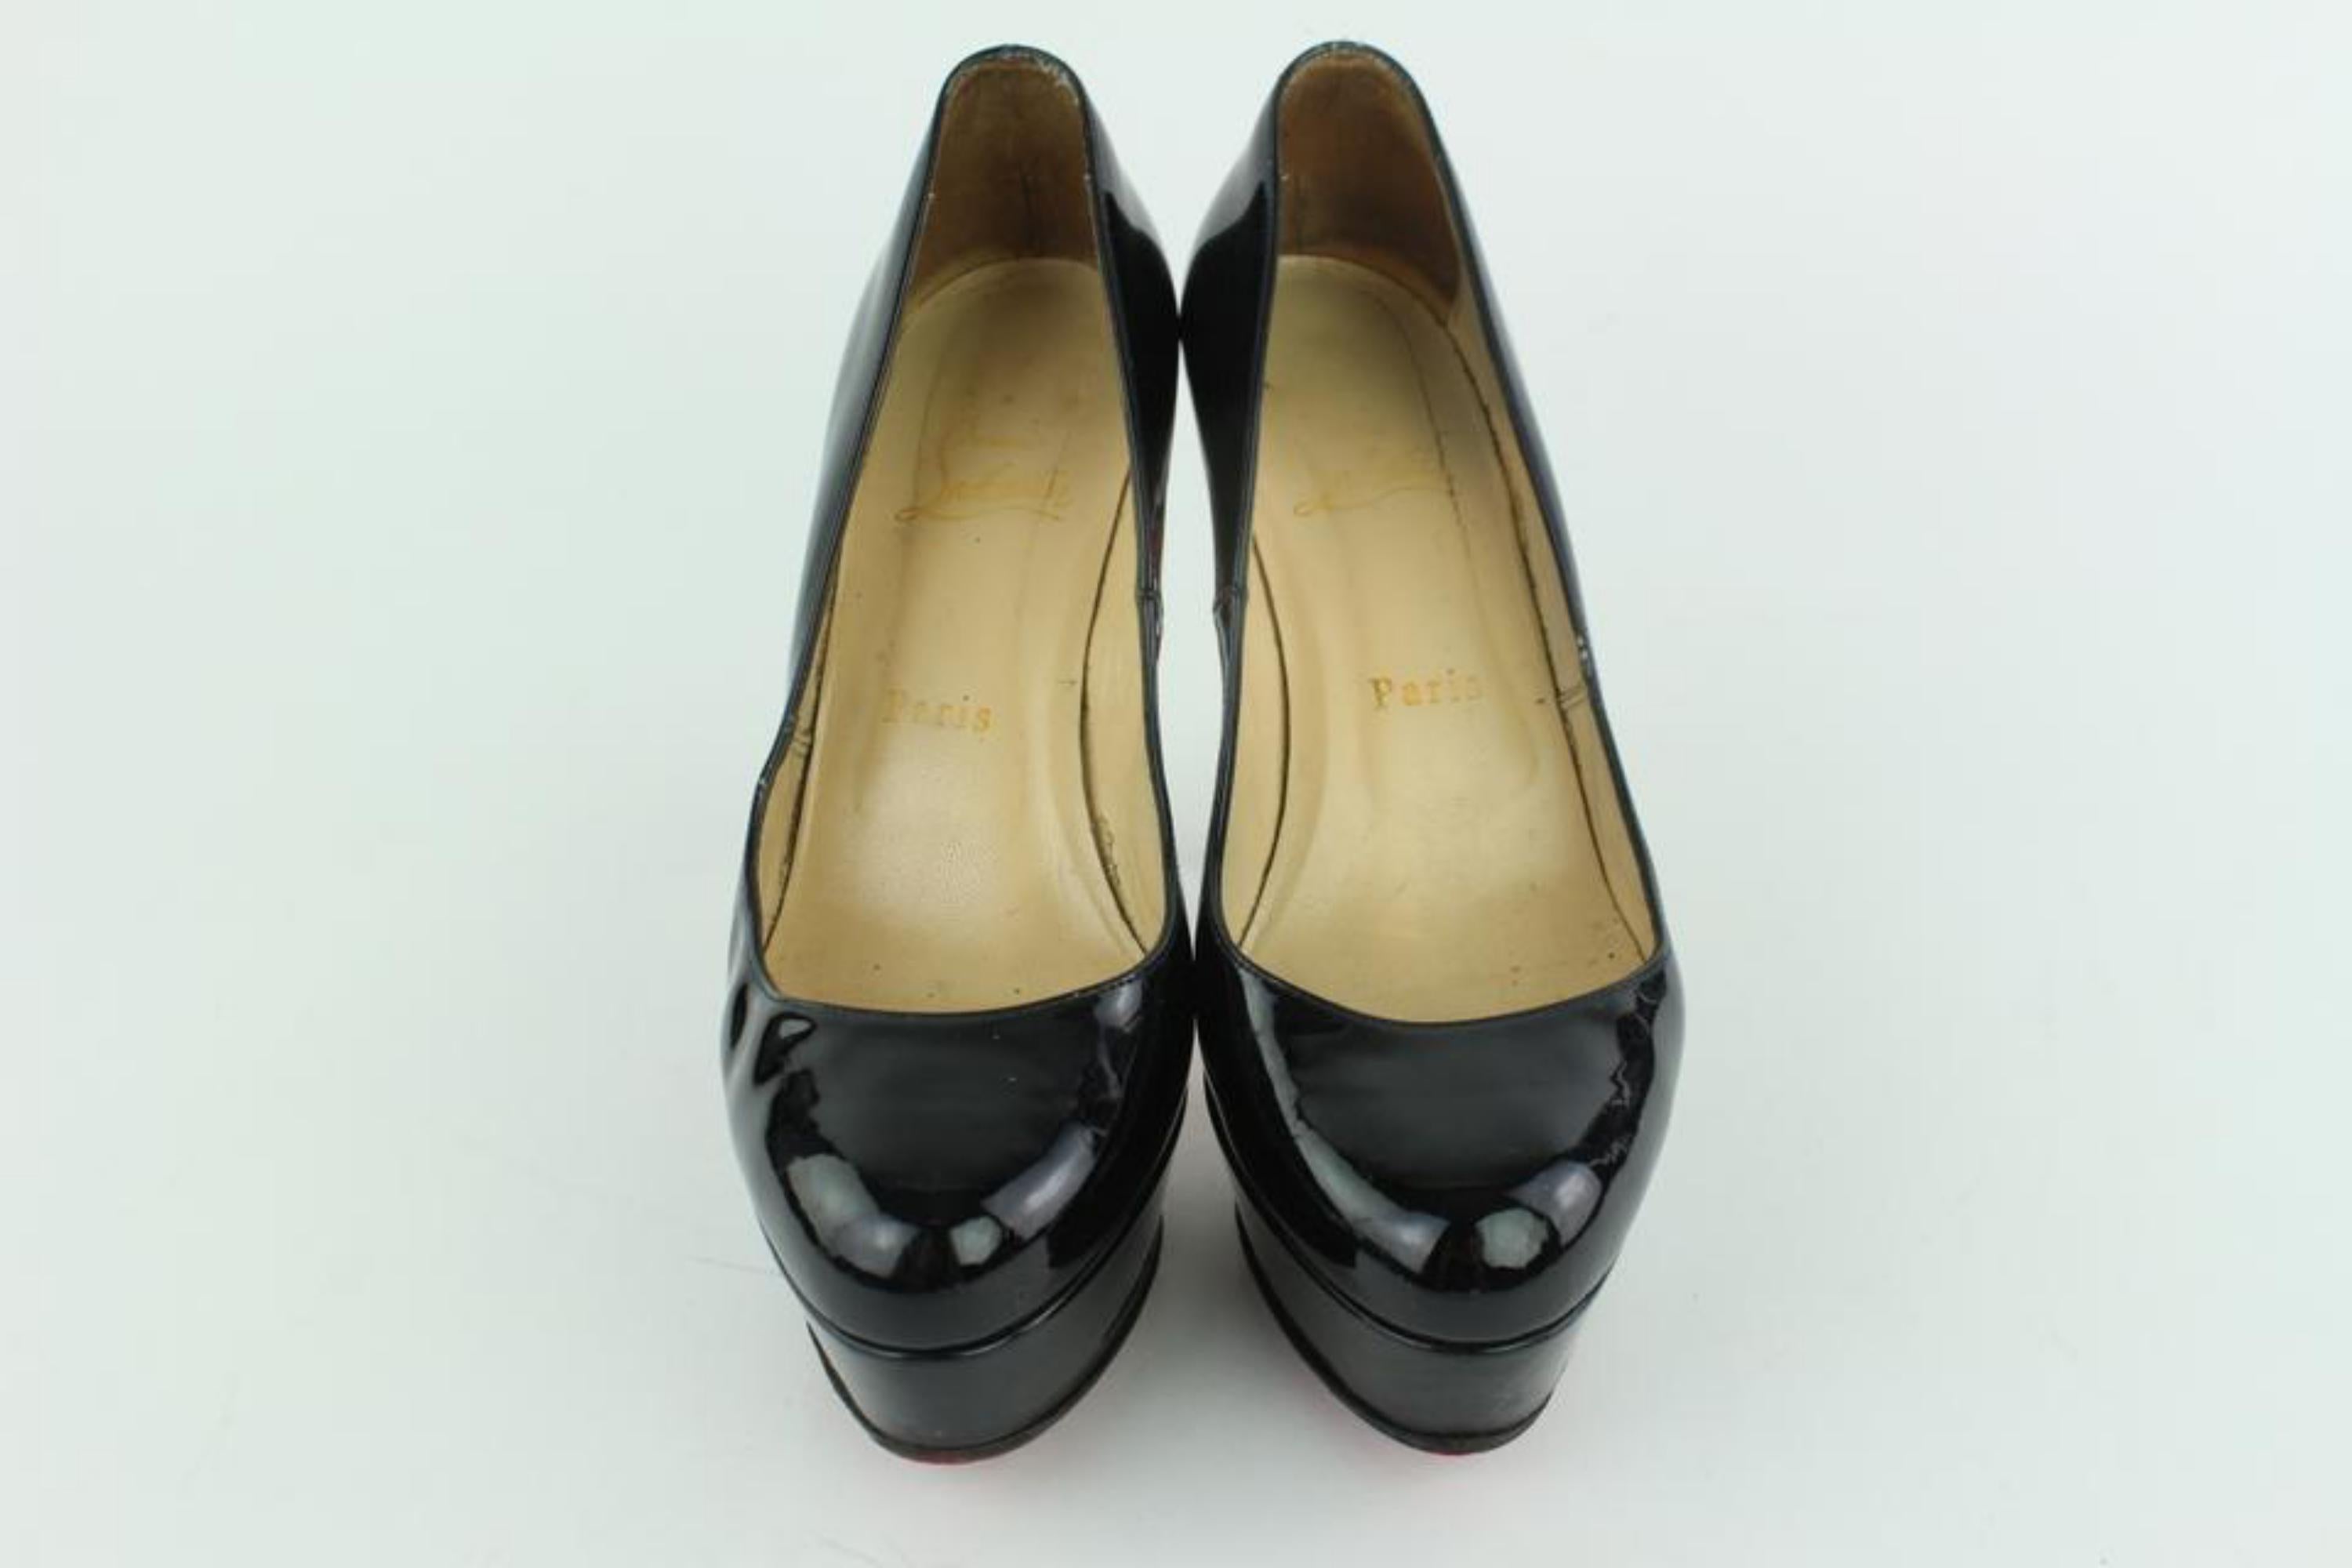 Christian Louboutin Black Patent Bianca Platform Heels 19clz1016 Pumps For Sale 1